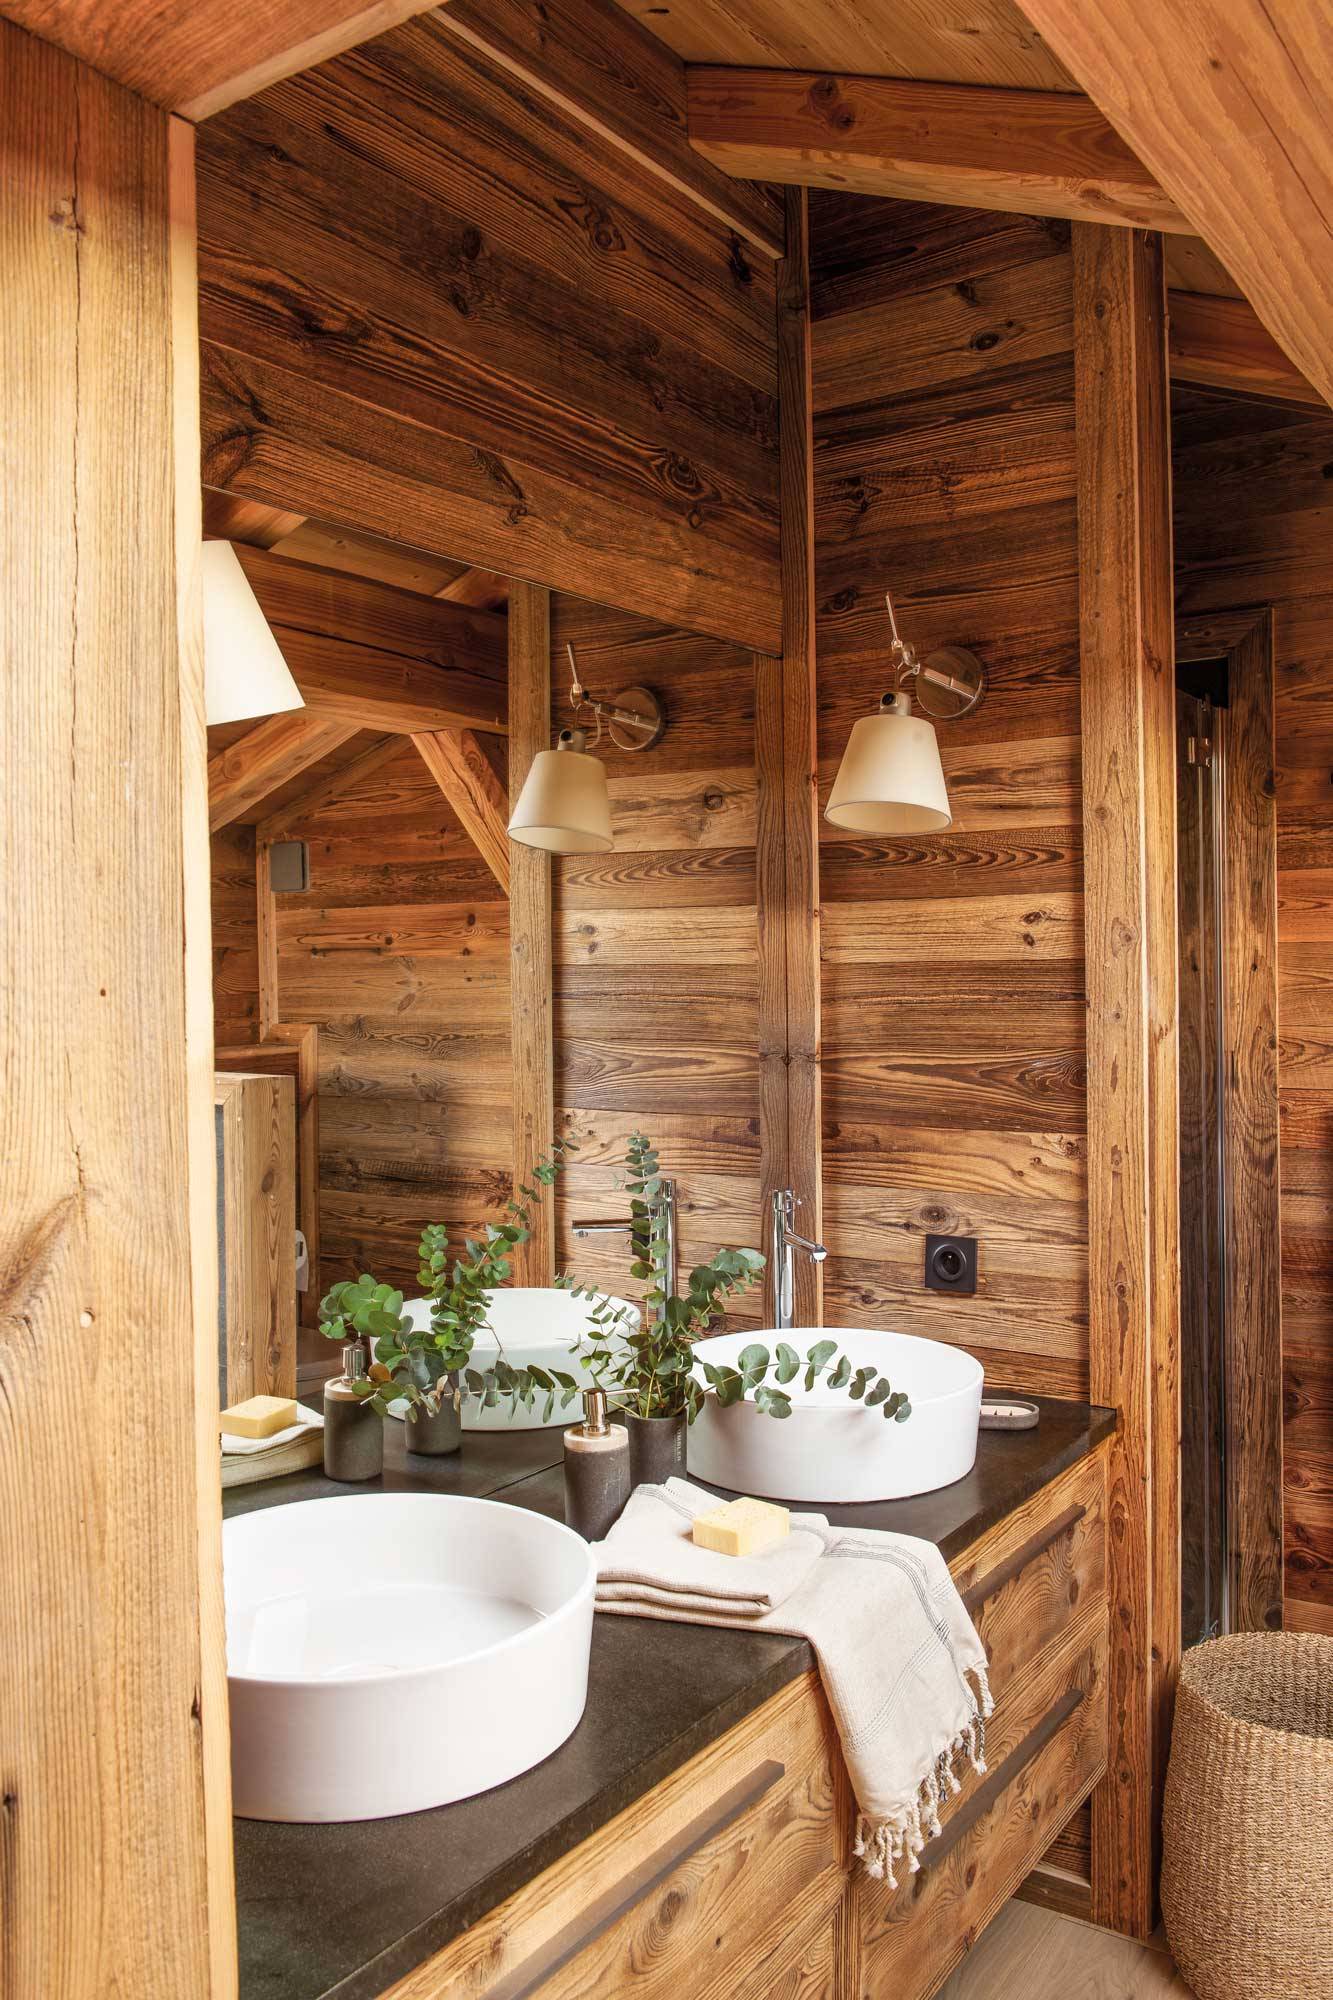 Baño rústico con mobiliario y revestimientos de madera.